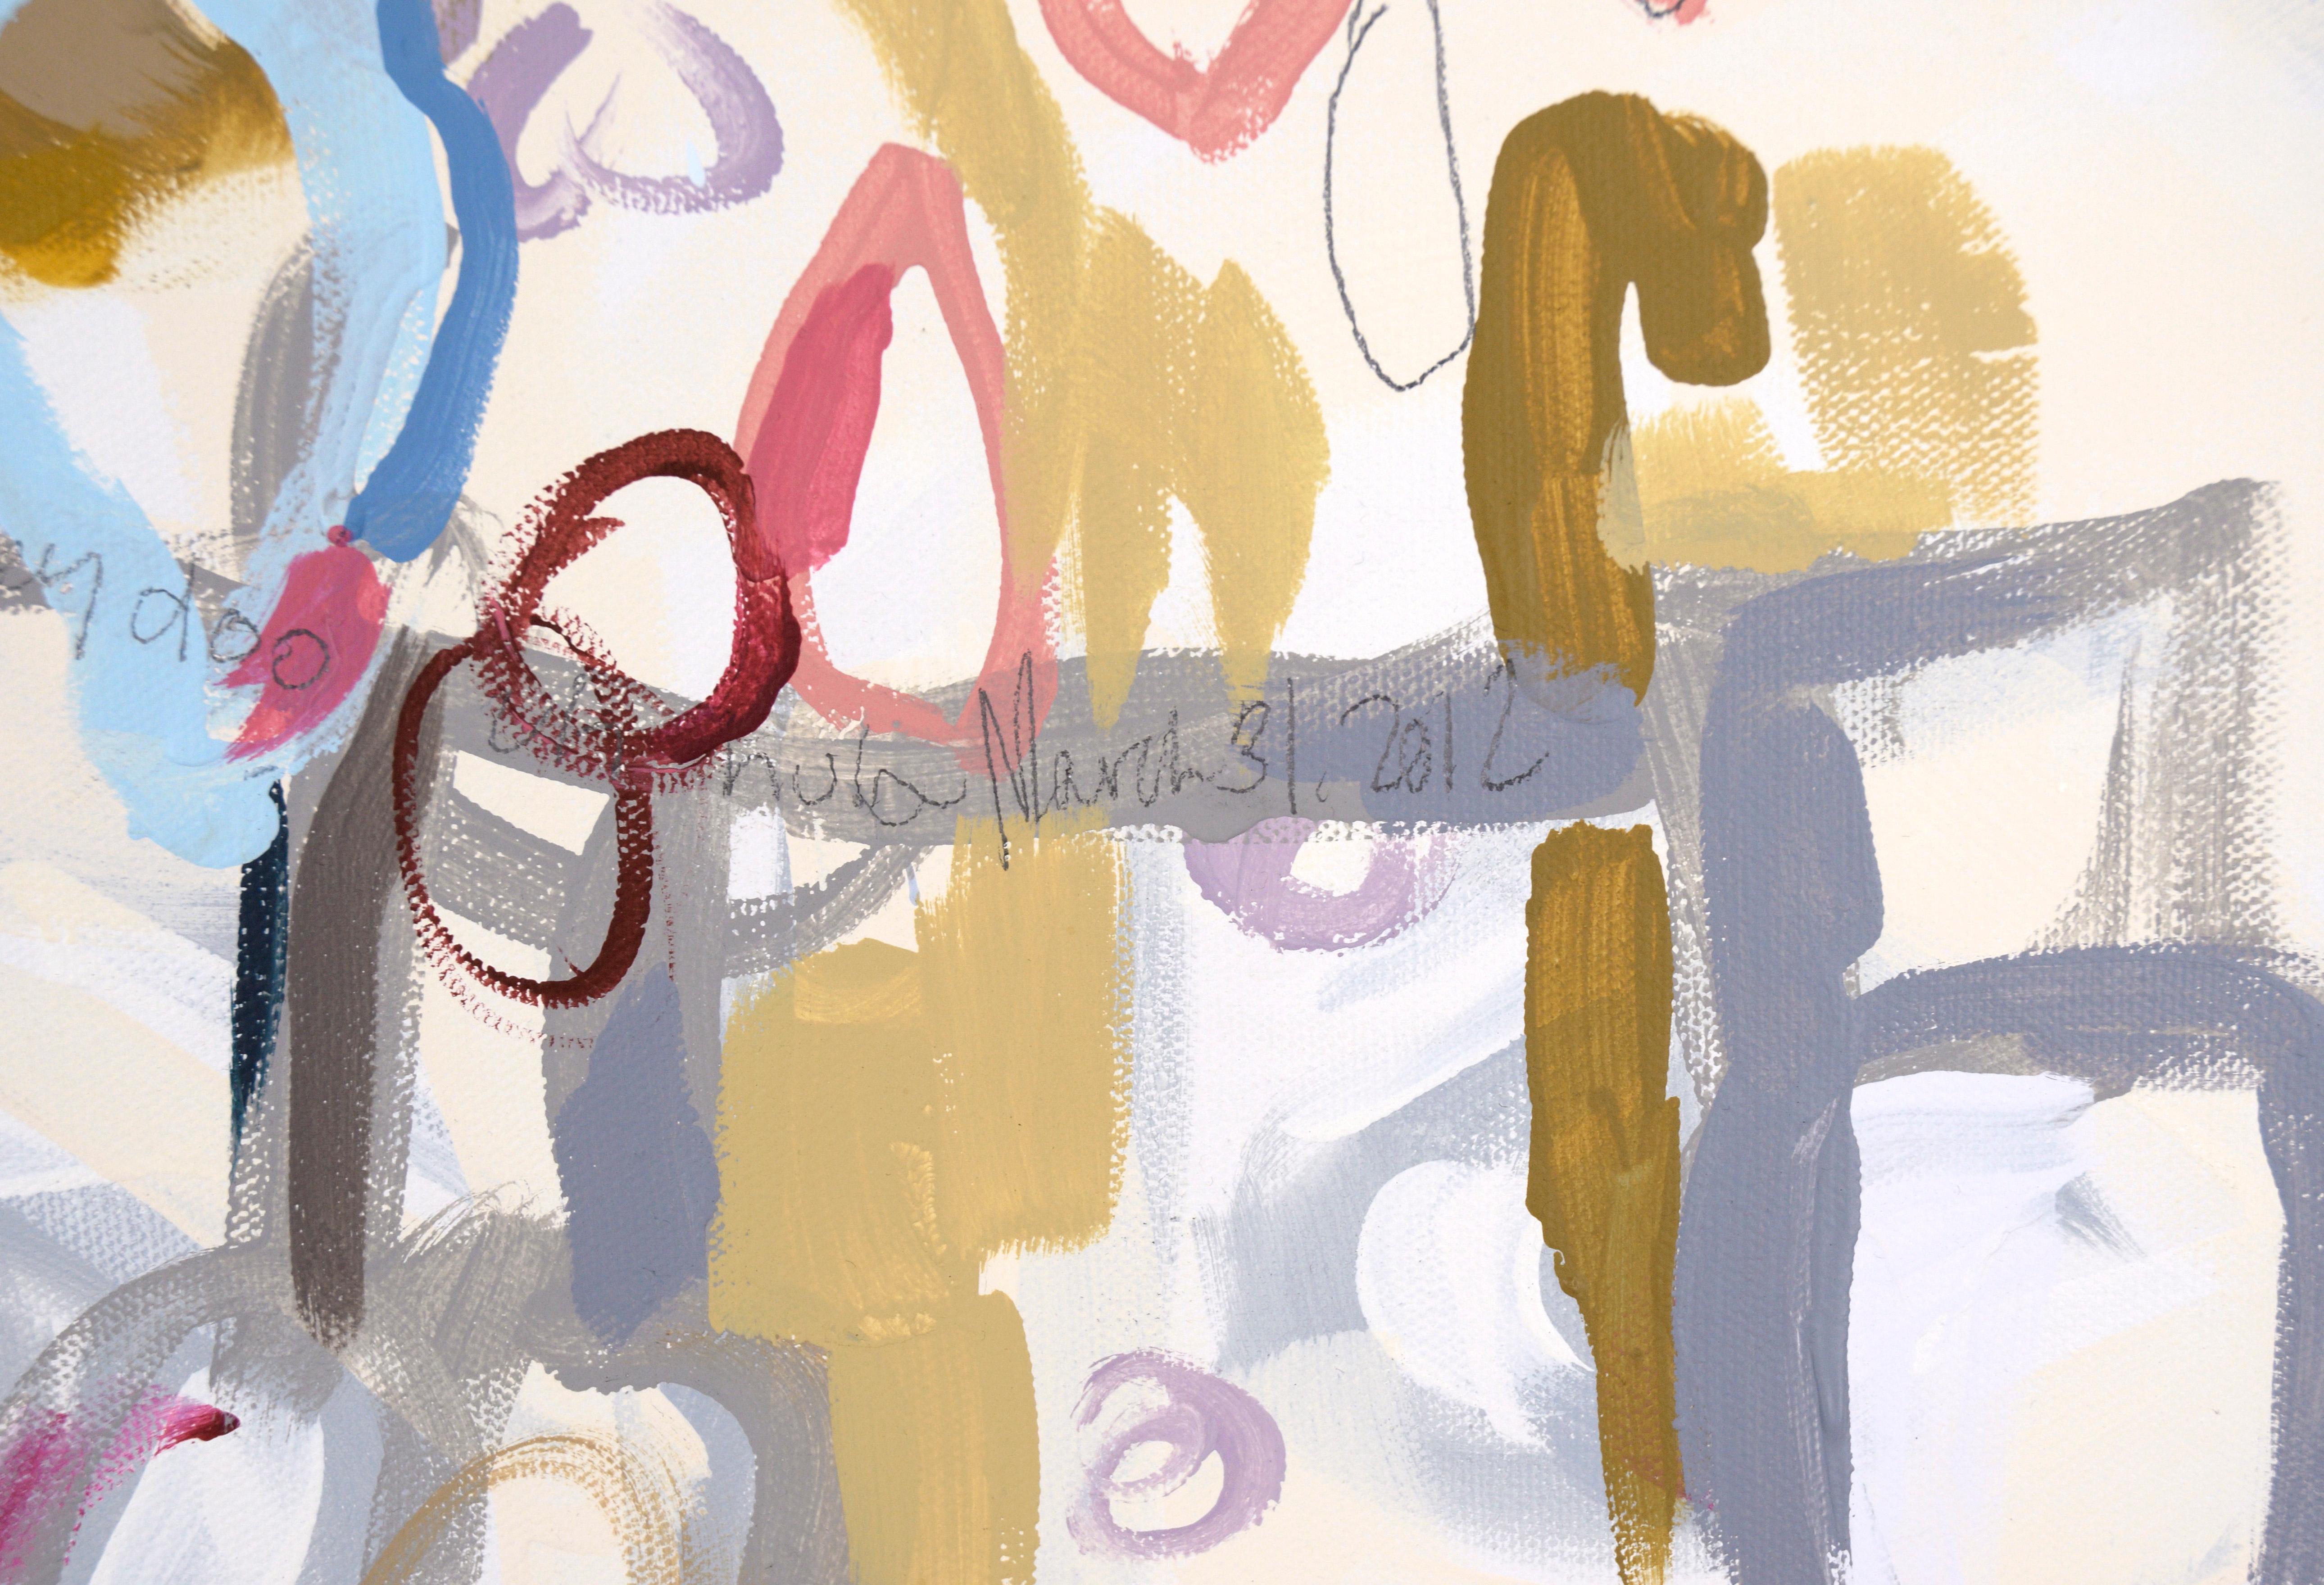 Abstrakt-expressionistische Komposition „Cha Dooky Doo“ aus Acryl auf Leinwand

Helle und dynamische abstrakte Komposition von Nancy B. Westfall (Amerikanerin, geb. 1970). Dieses Stück besteht aus kreisförmigen, sich wiederholenden Formen, ist